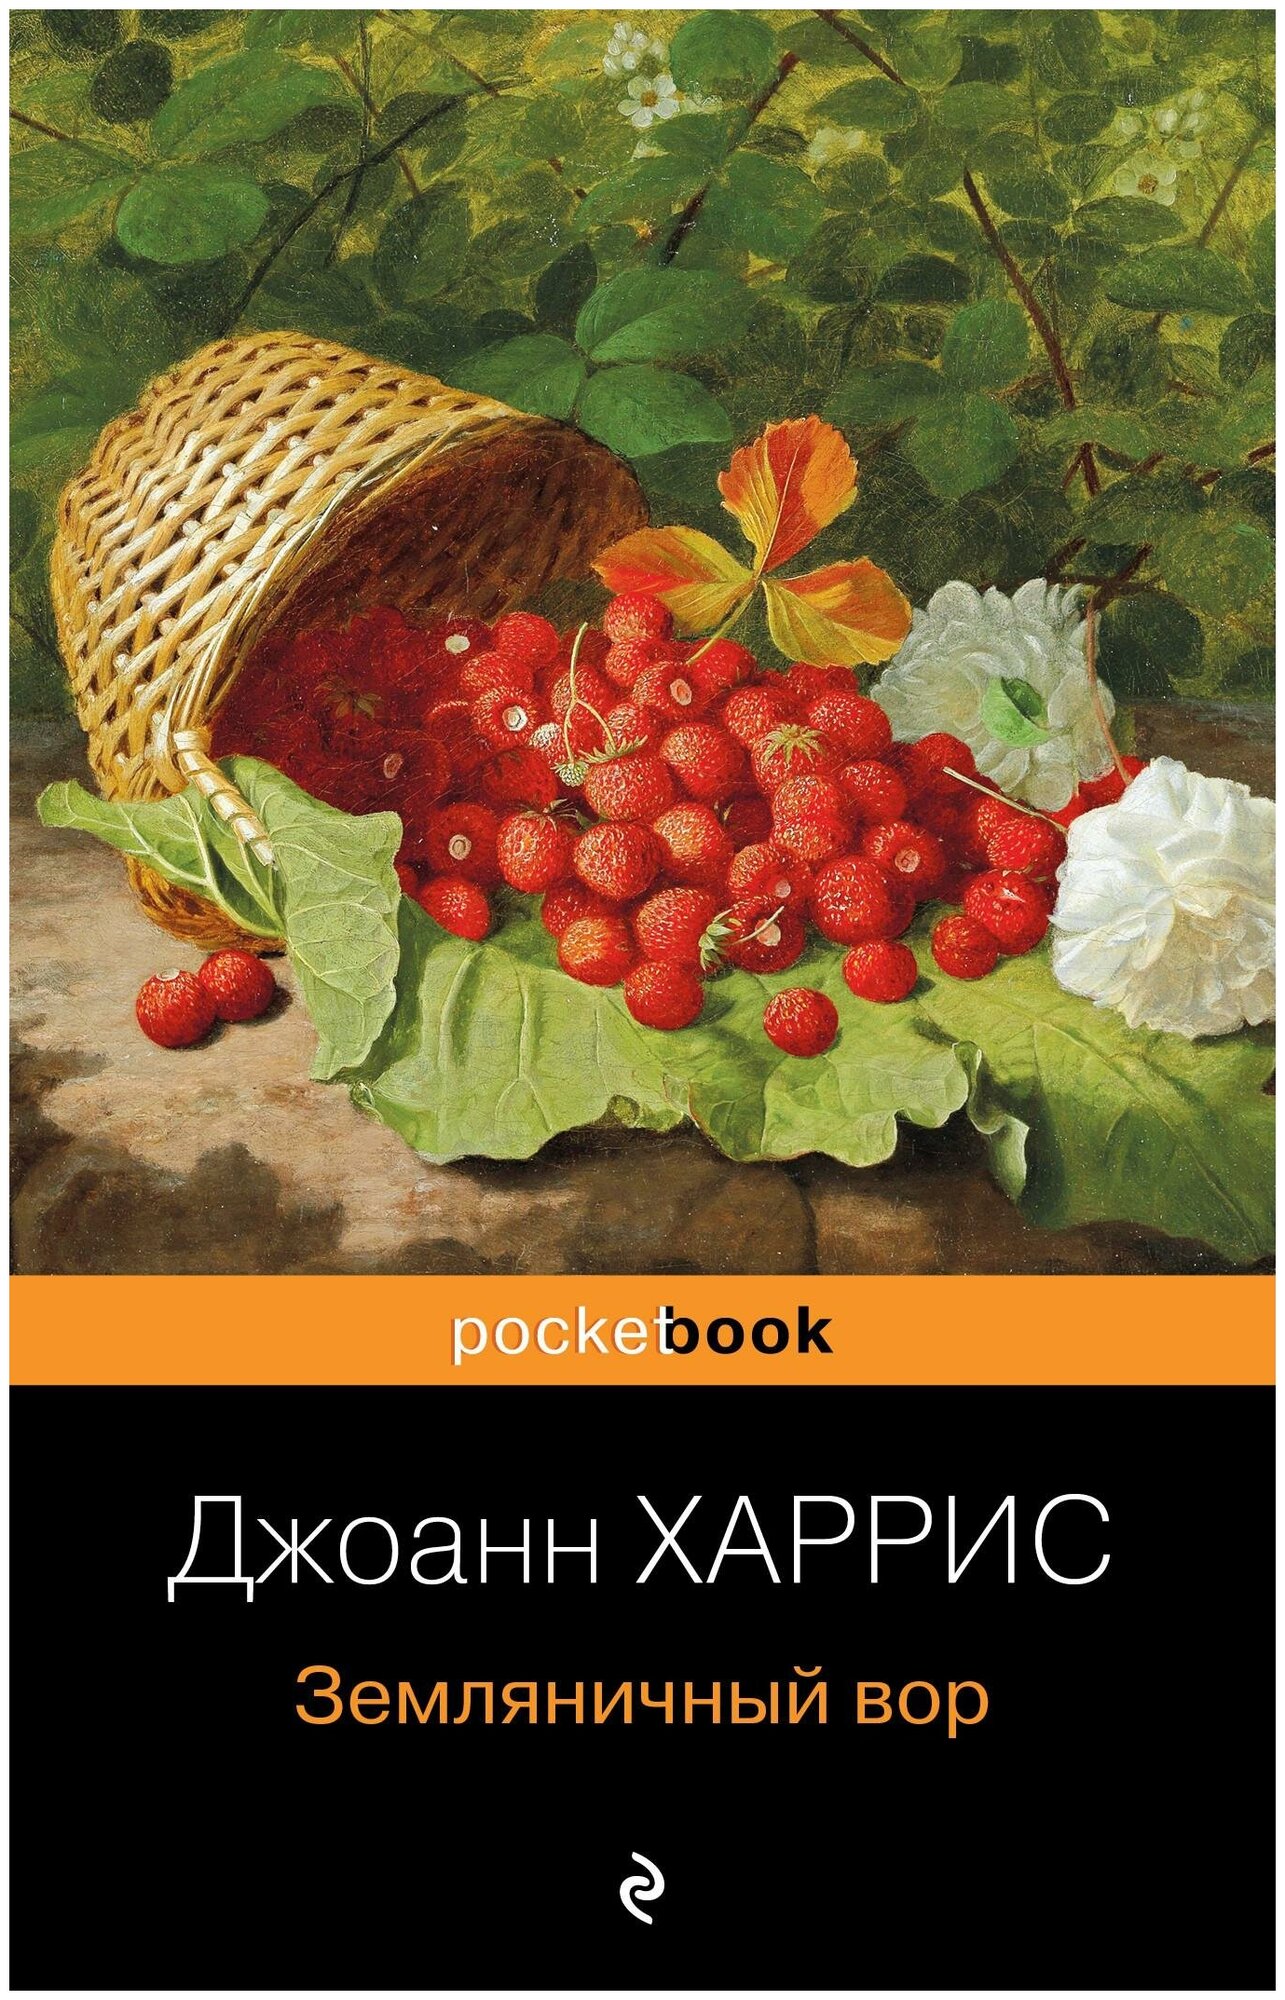 Харрис Дж. Земляничный вор. Pocket book (обложка)